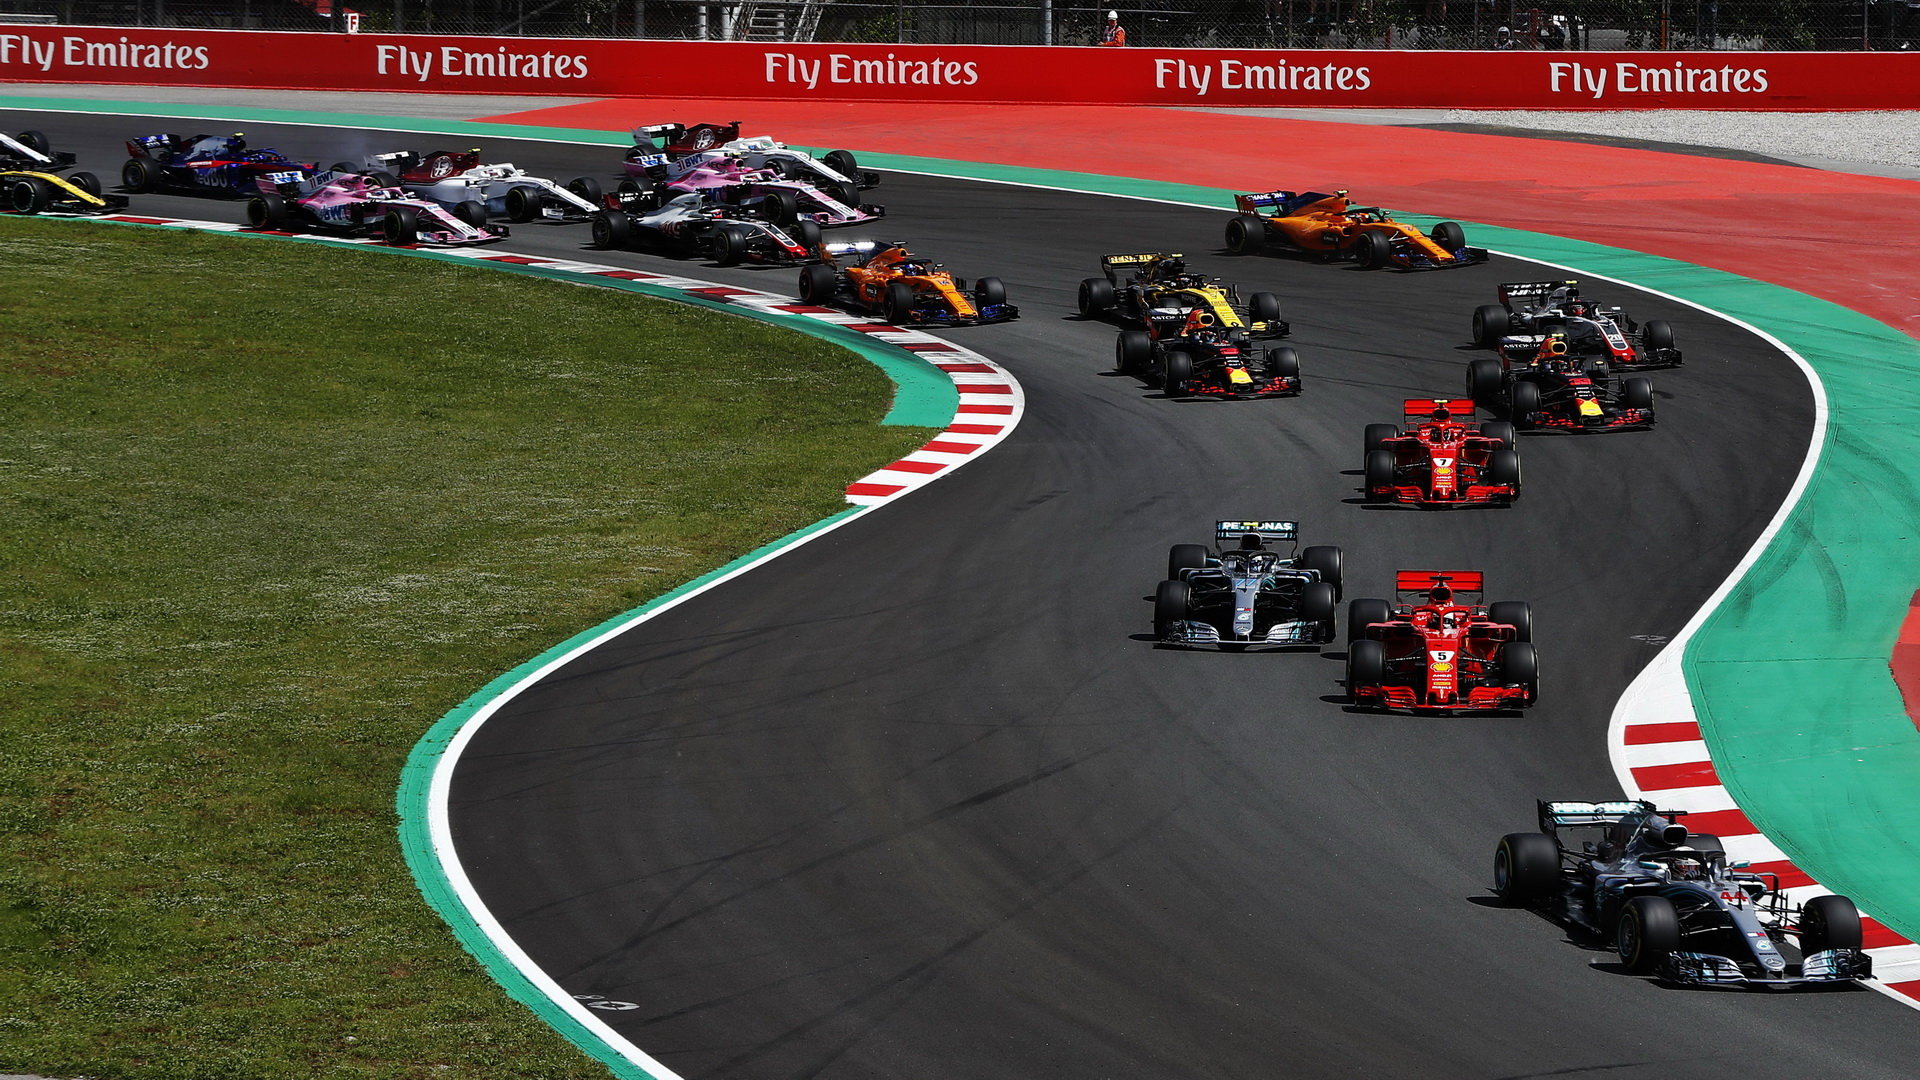 Začátek závodu nebyl z pohledu Ferrari špatný, Vettel po startu předjel Bottase